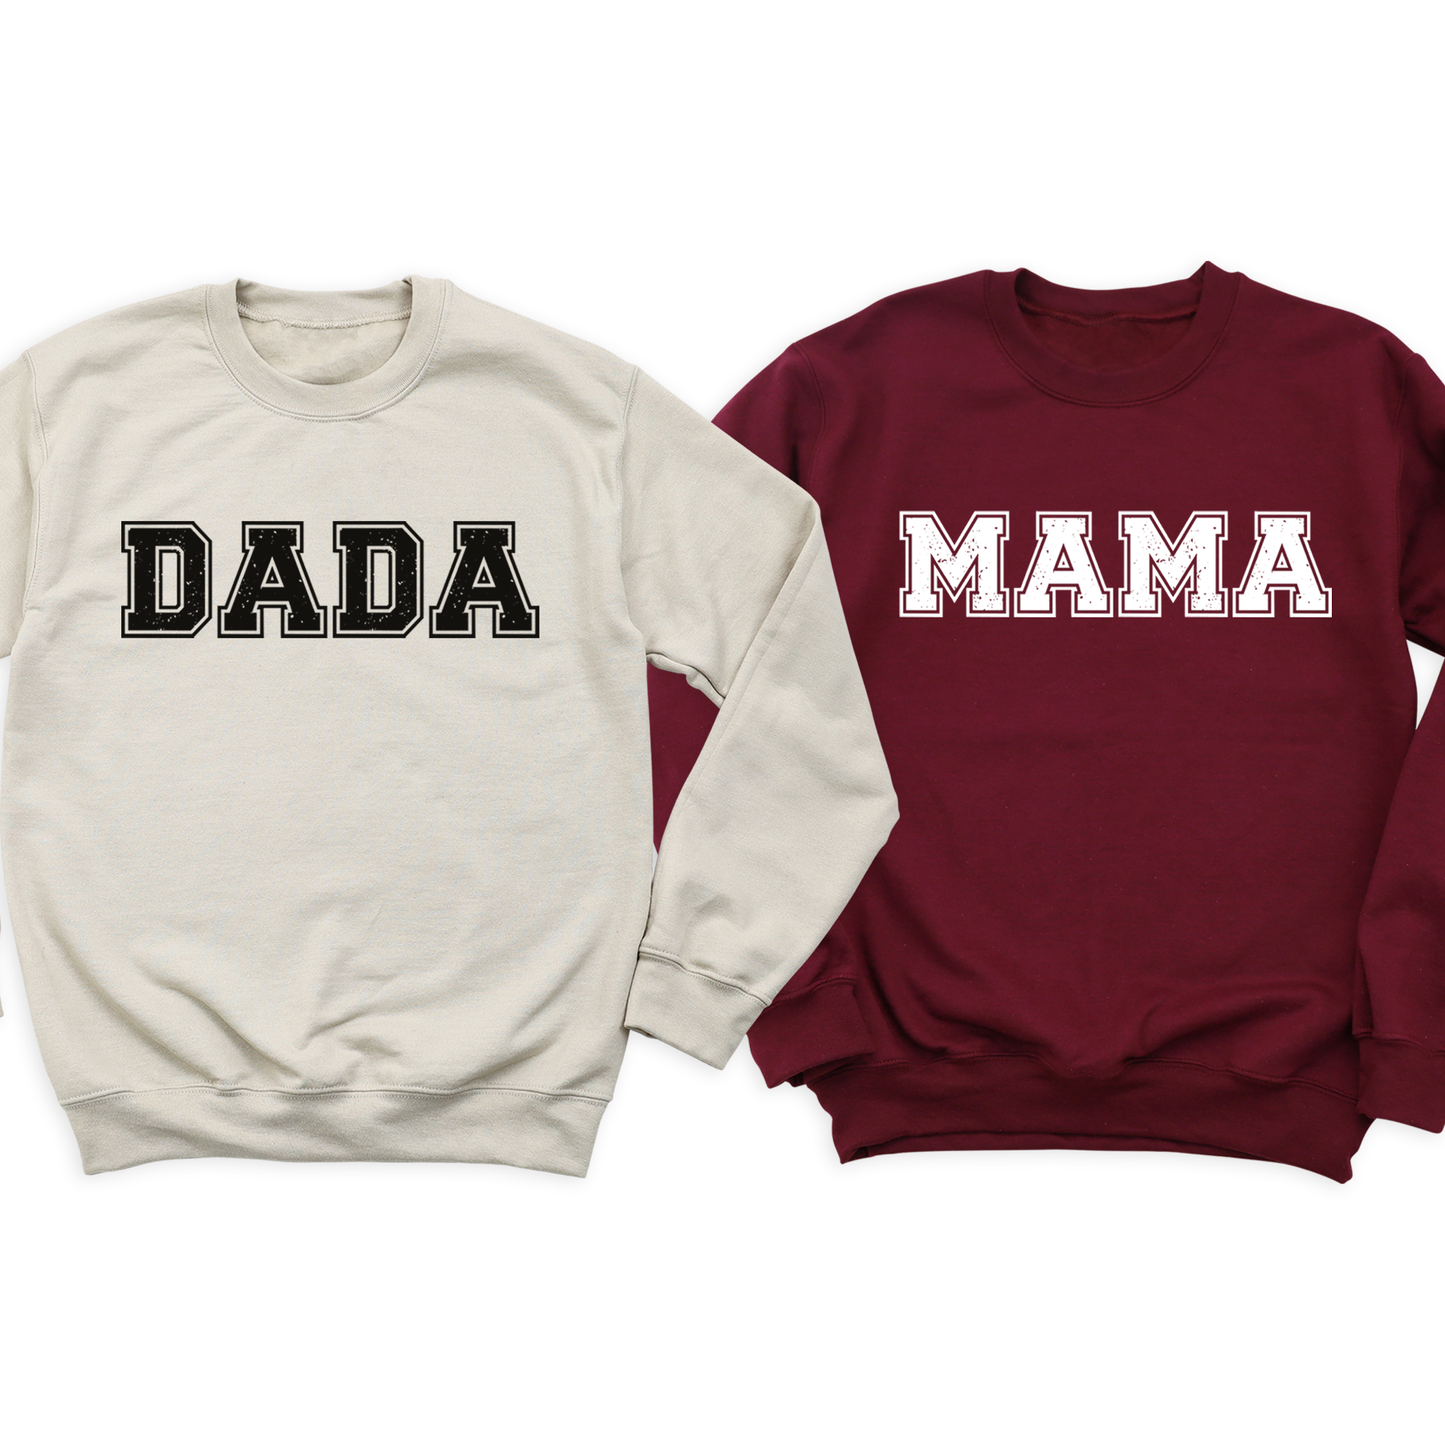 Mama Dada T-Shirt